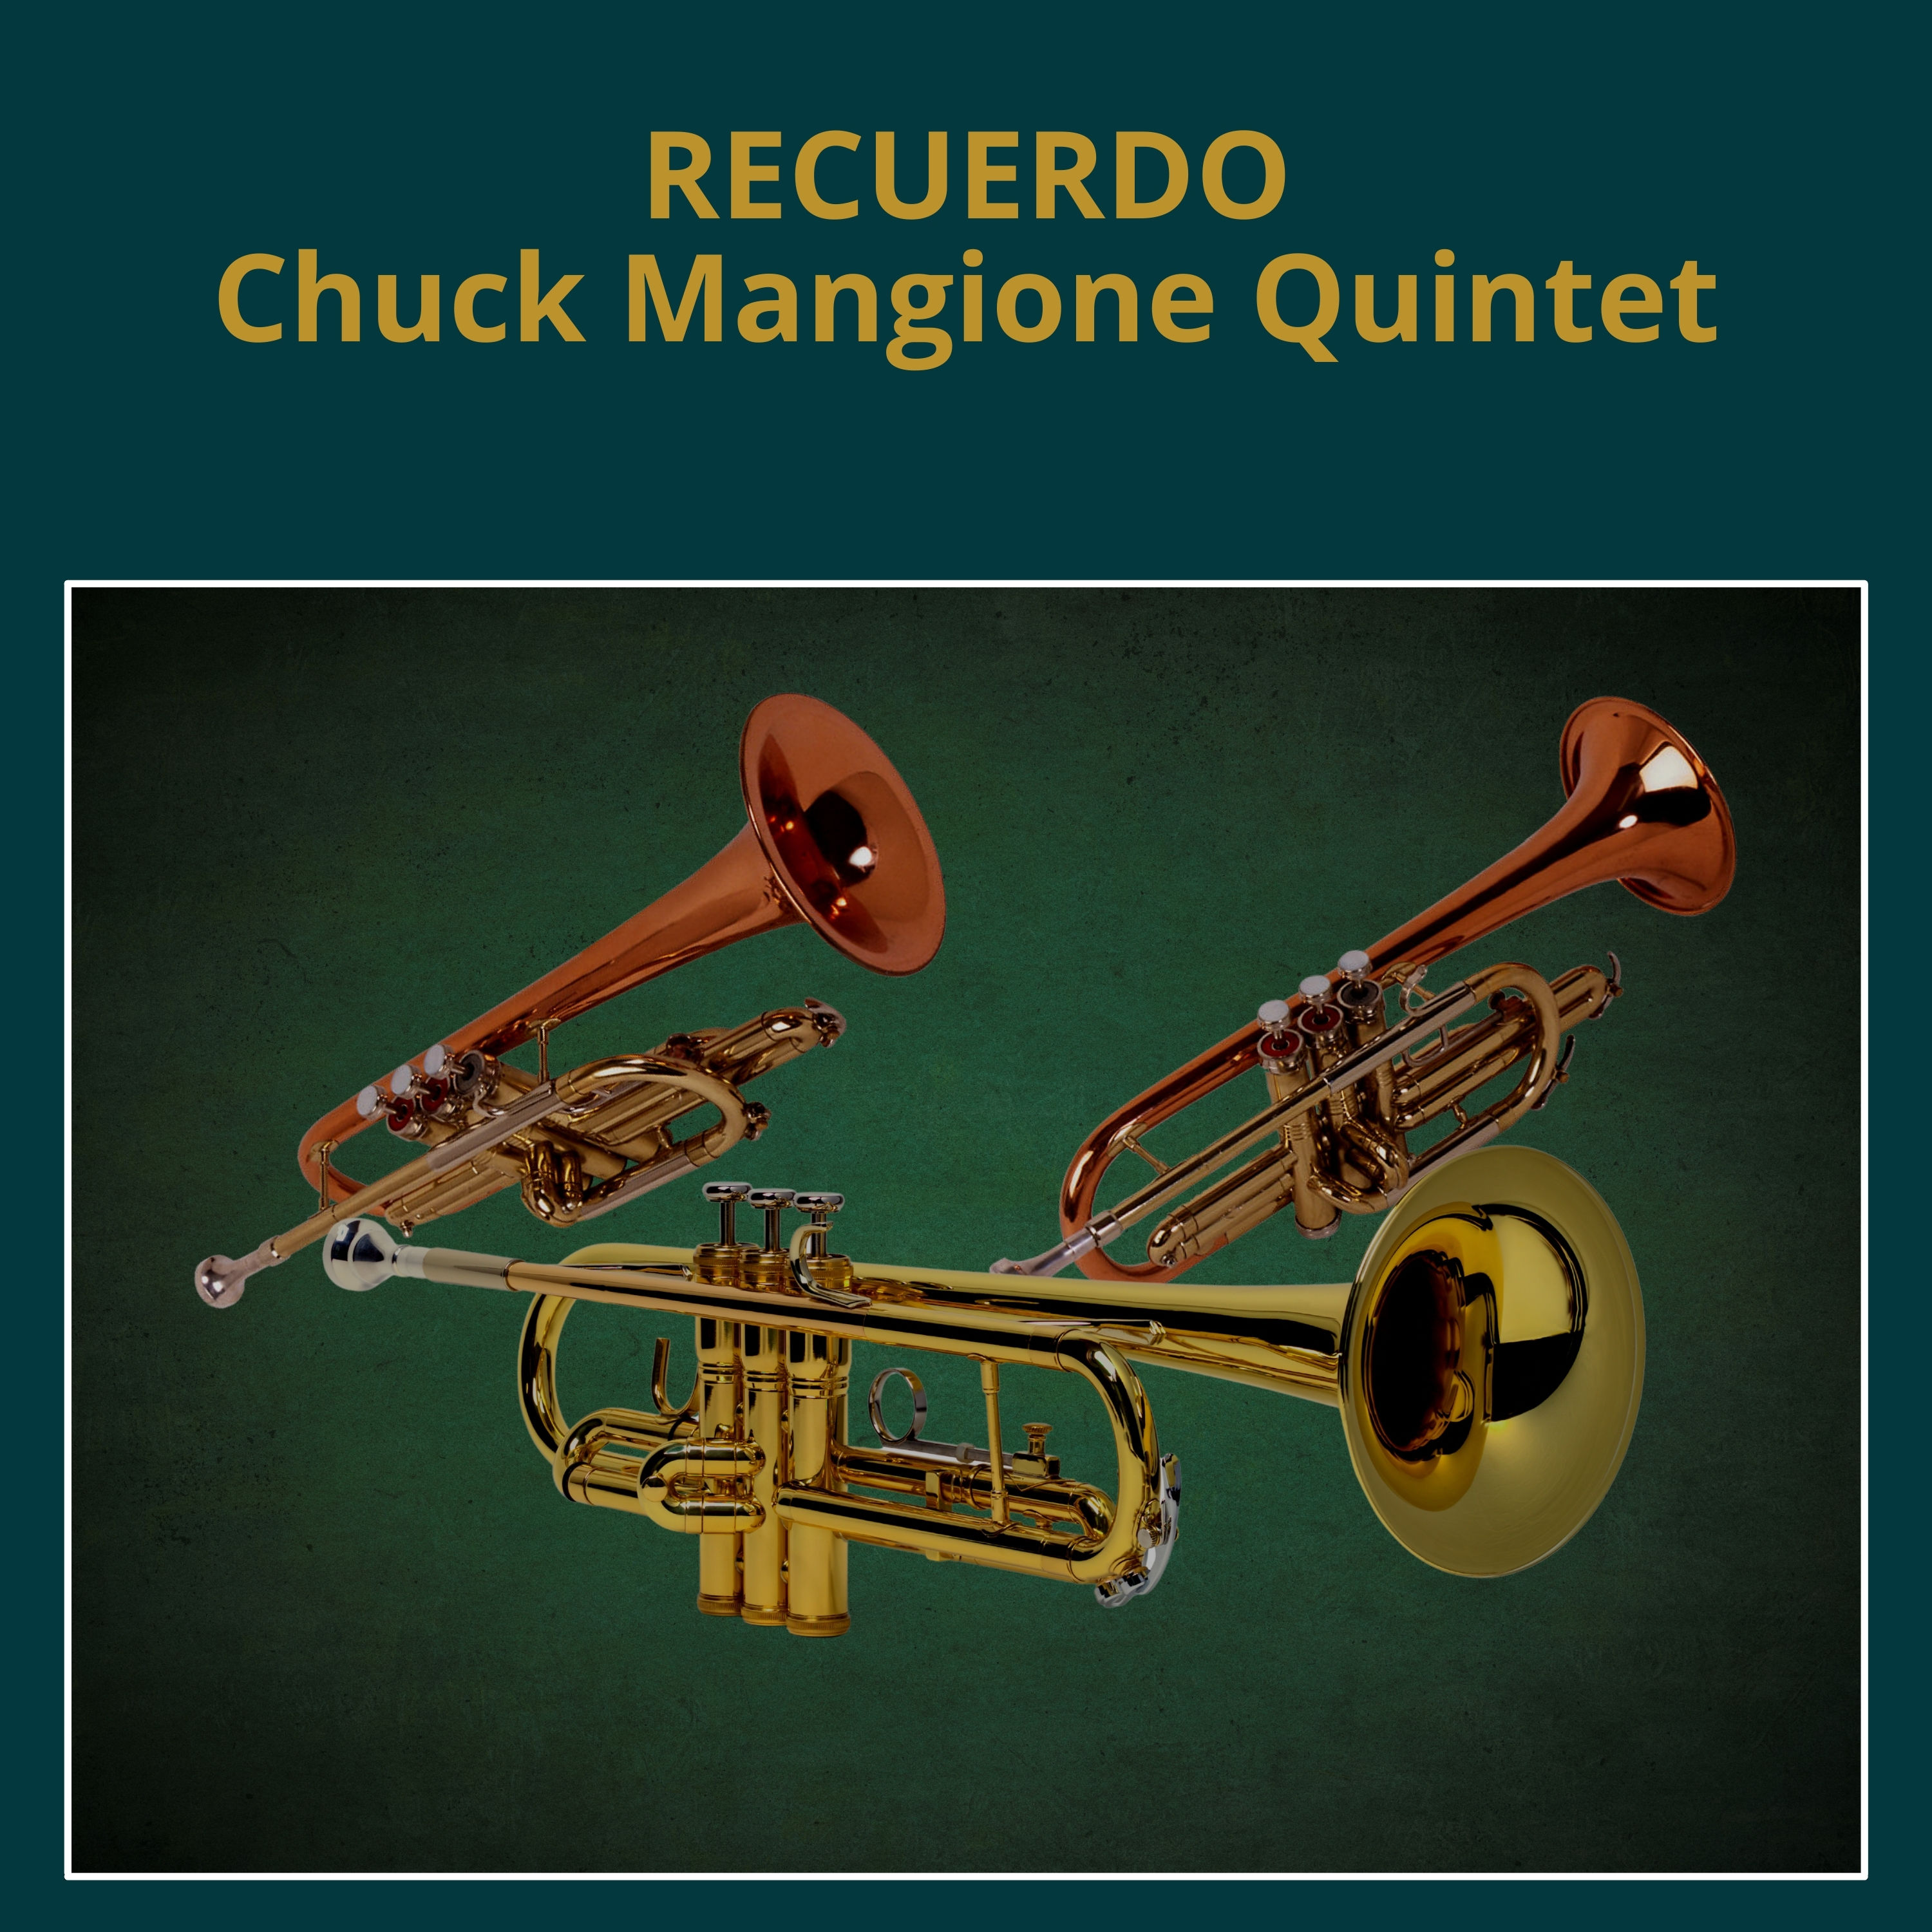 Chuck Mangione Quintet - Recuerdo (1962/1990/2021) [FLAC 24bit/48kHz]